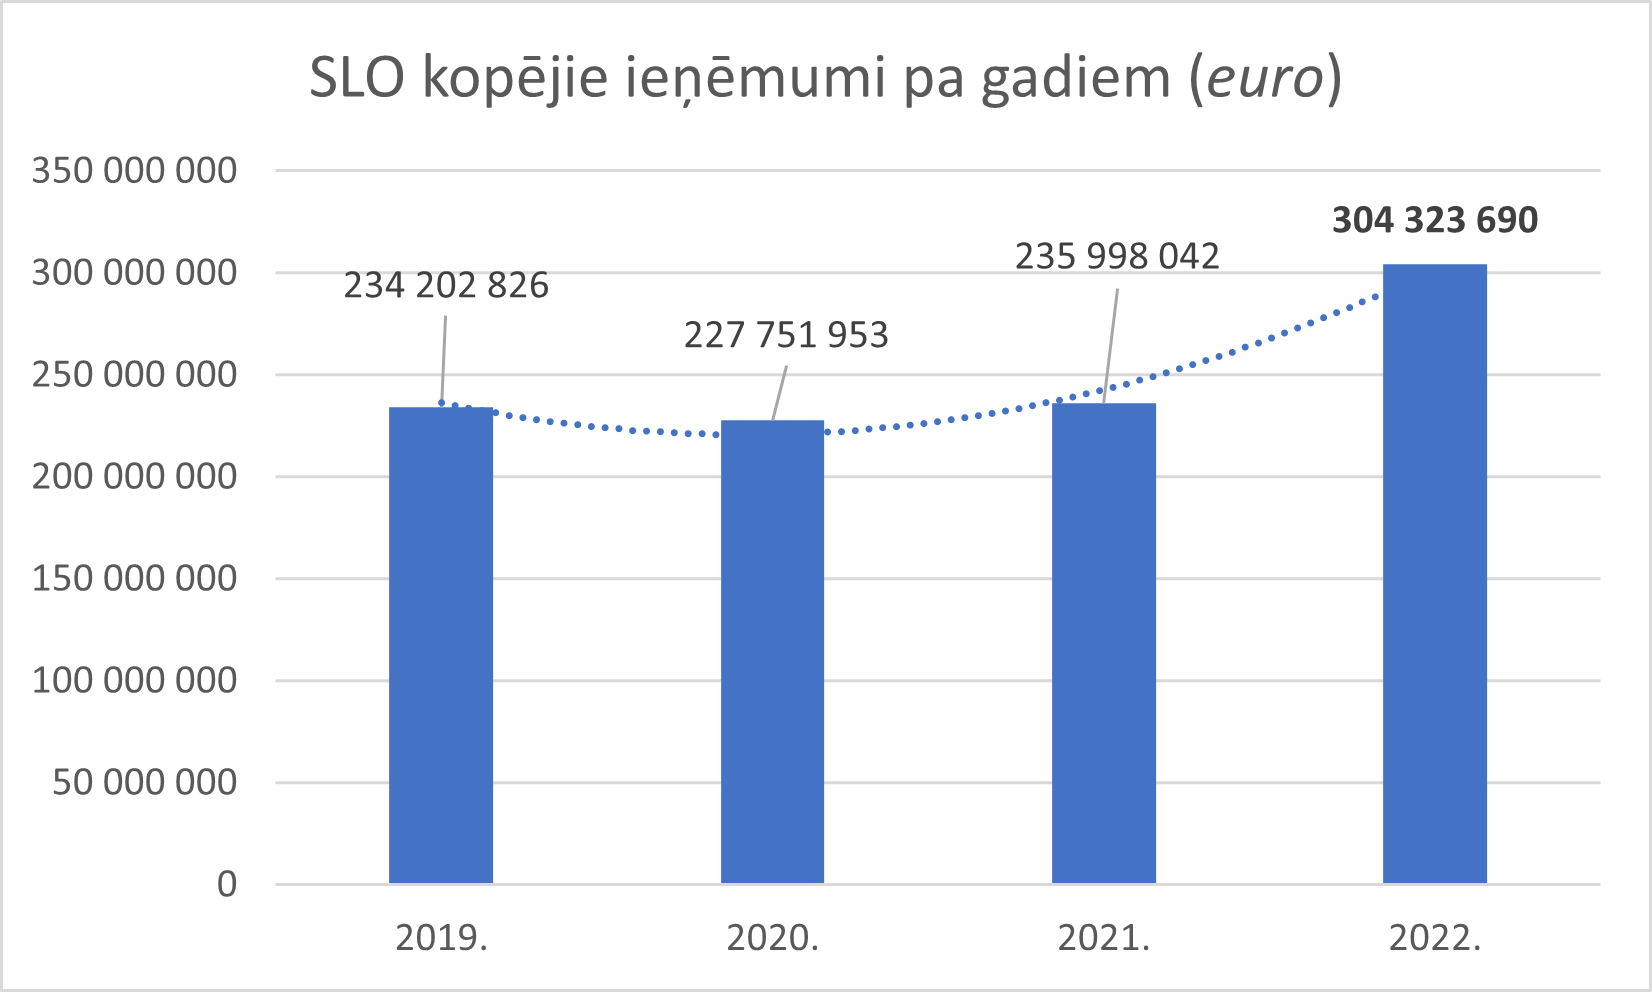 SLO kopējie ieņēmumi pa gadiem (euro) grafiks